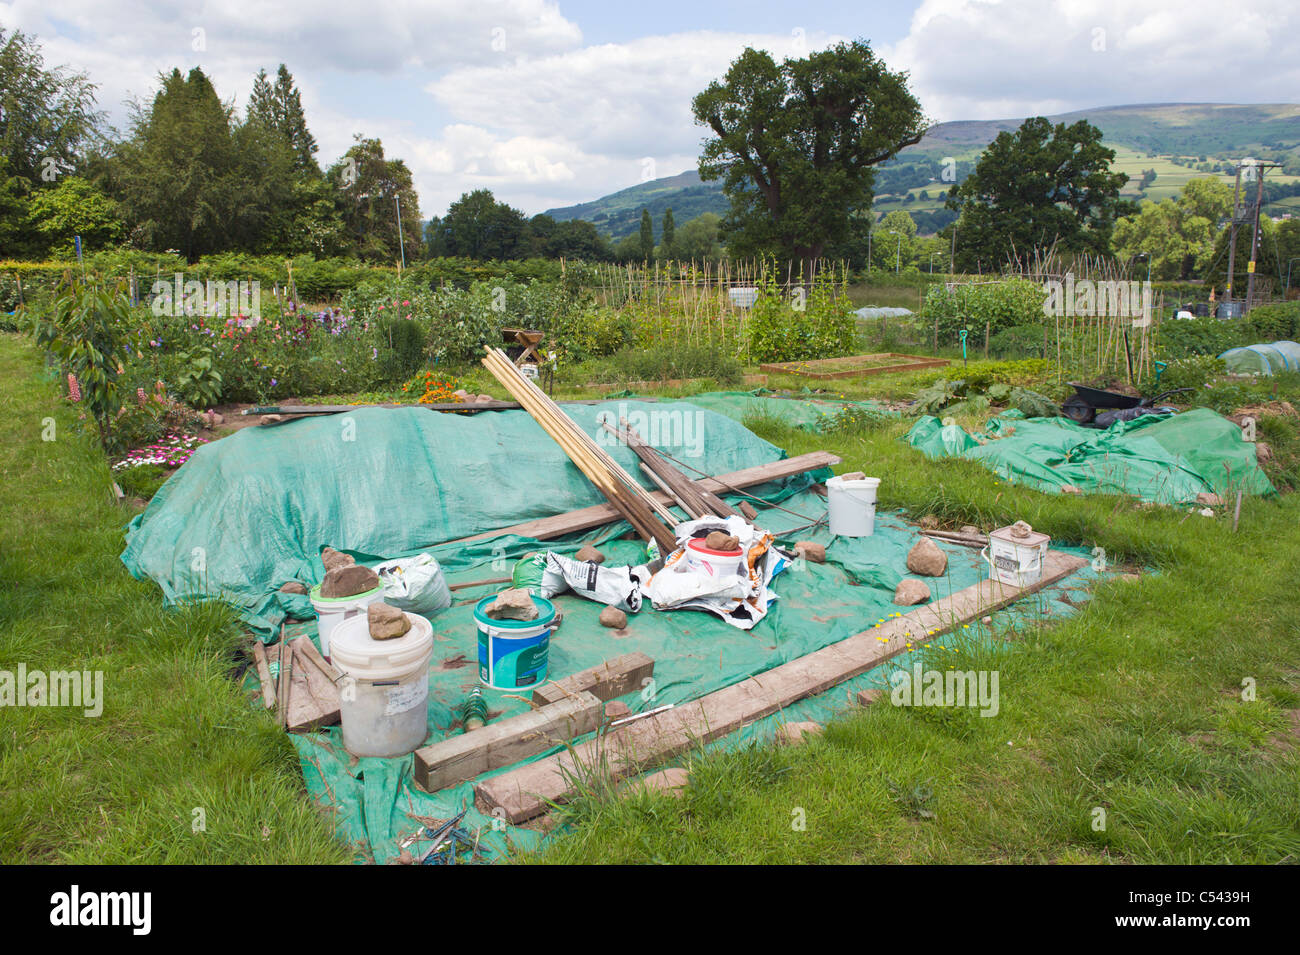 Terrain recouvert de plastique vert pour supprimer la croissance des mauvaises herbes sur les allotissements de la communauté dans le village de Powys Personnalités South Wales UK Banque D'Images